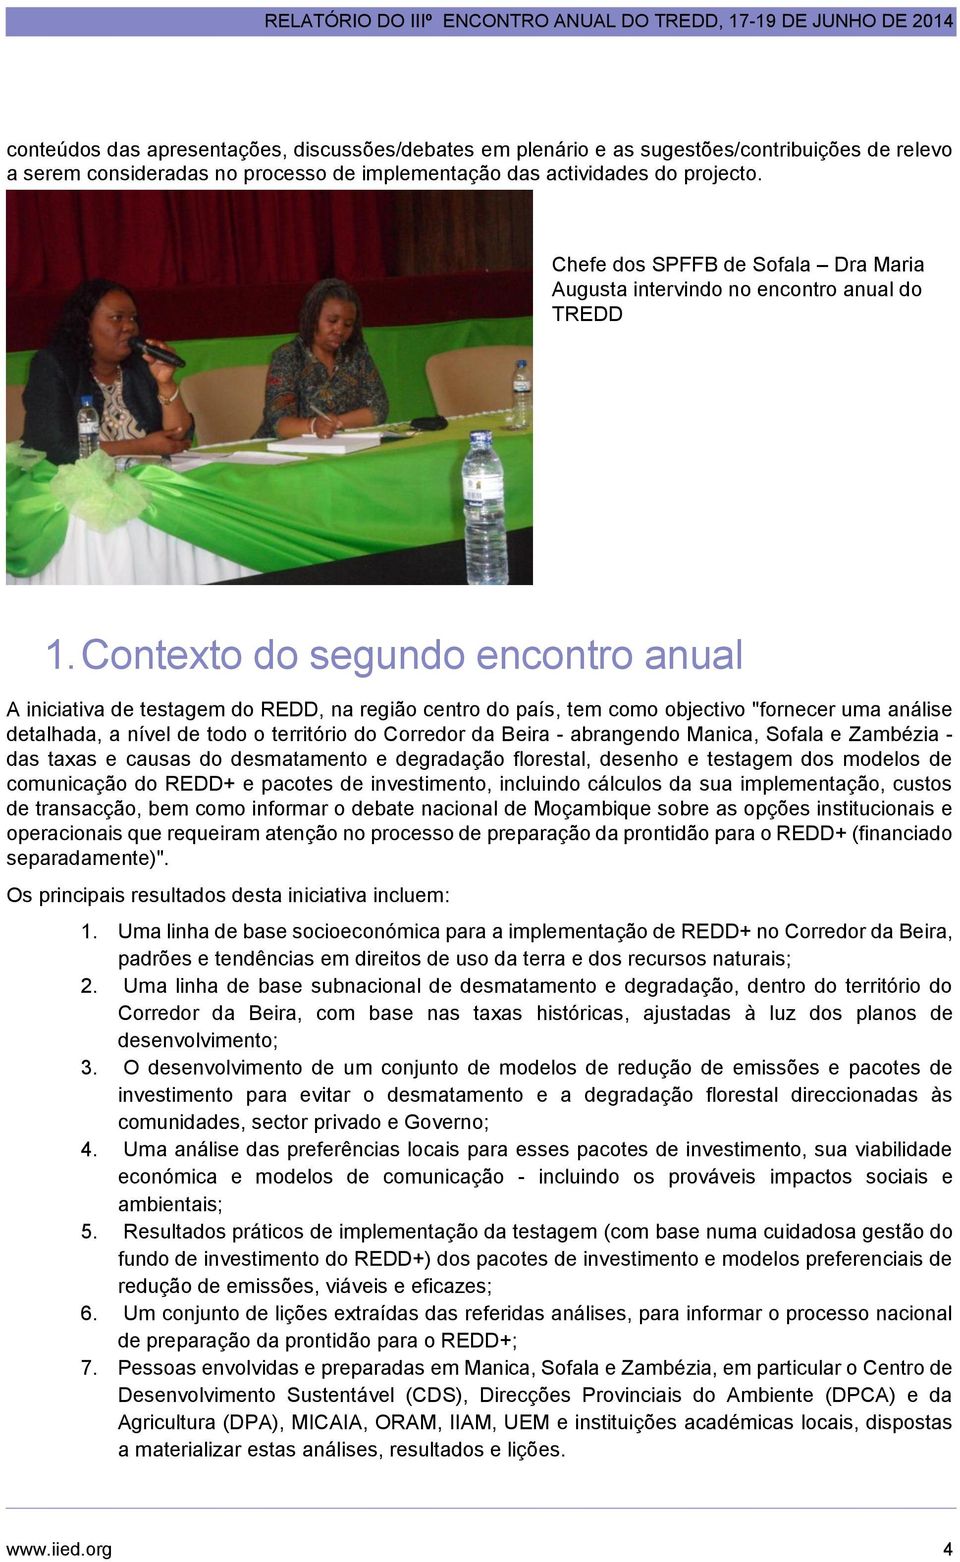 Contexto do segundo encontro anual A iniciativa de testagem do REDD, na região centro do país, tem como objectivo "fornecer uma análise detalhada, a nível de todo o território do Corredor da Beira -